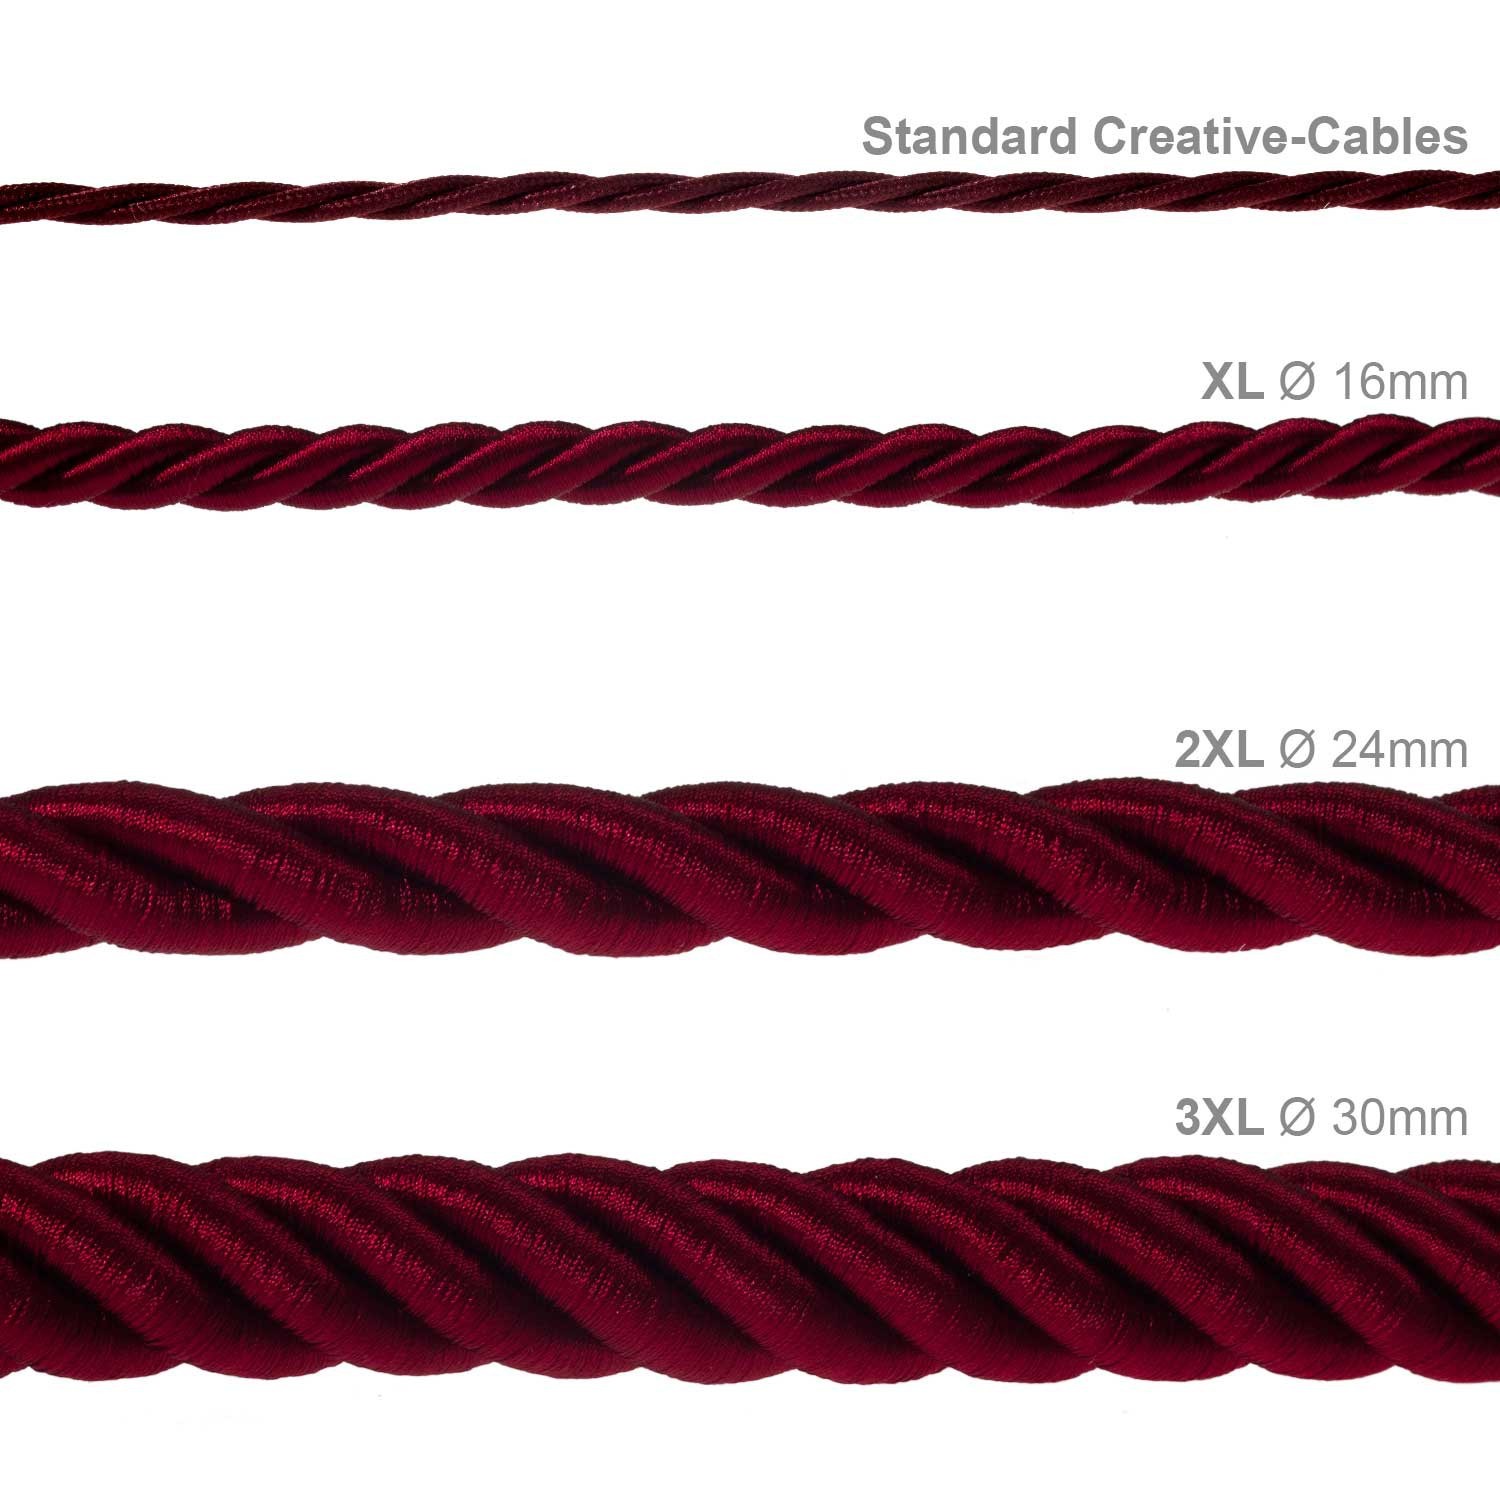 Cordón XL, cable eléctrico 3x0,75, recubierto en tejido bordeos oscuro brillante. Diámetro: 16mm.